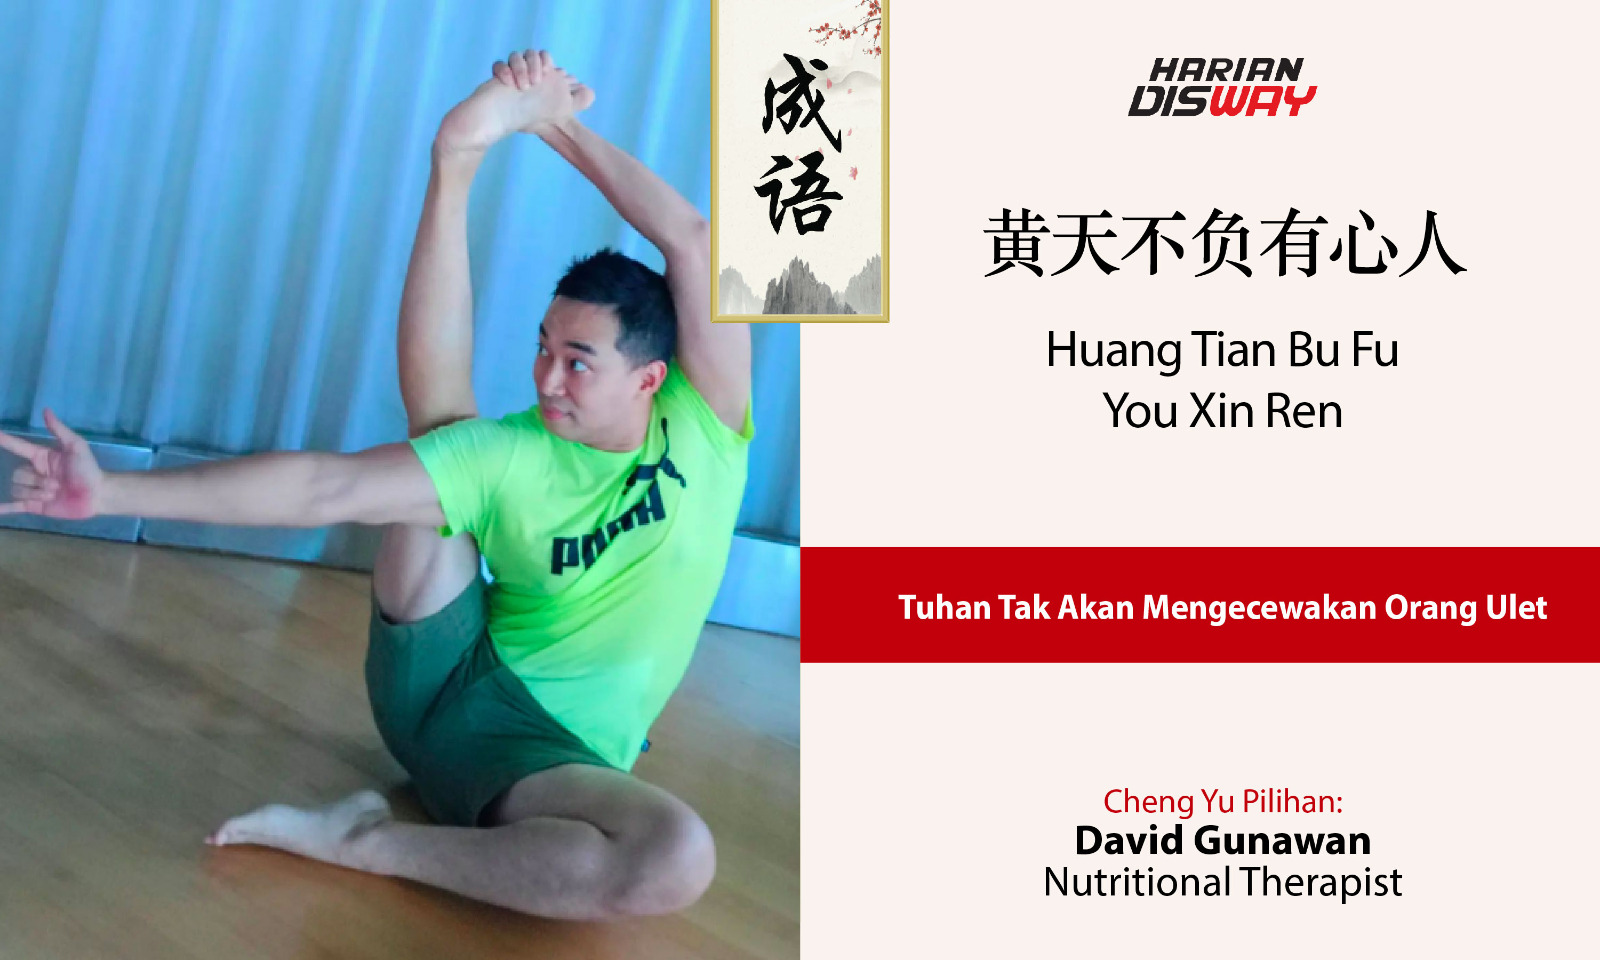 Cheng Yu Pilihan Nutritional Therapist David Gunawan: Huang Tian Bu Fu You Xin Ren